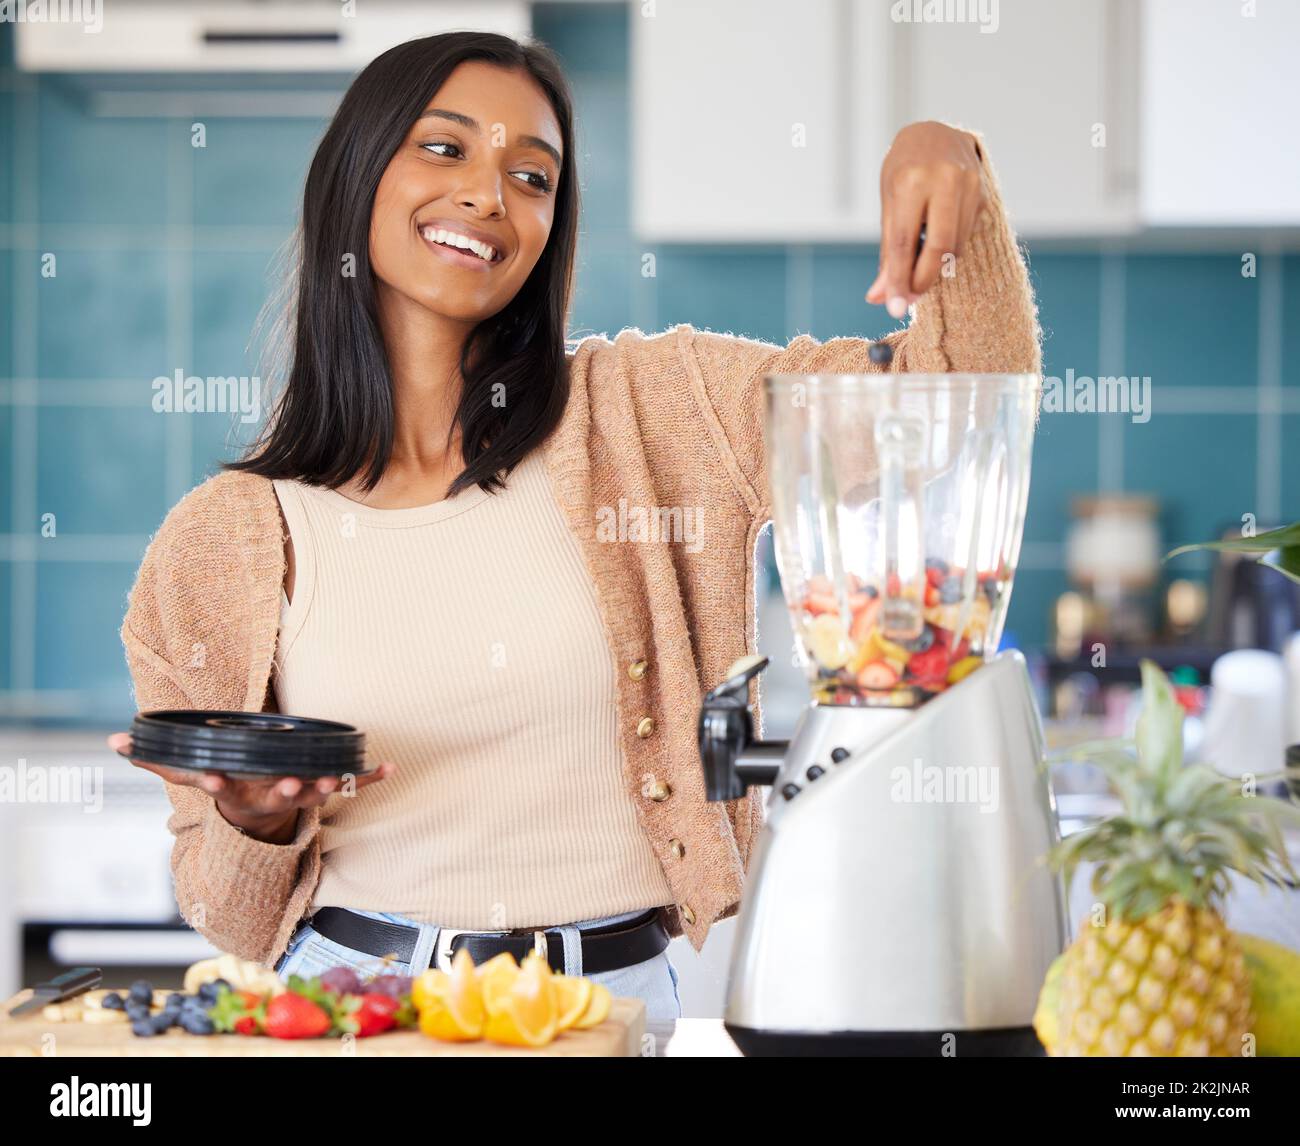 Cargando su batido con muchos ingredientes frescos. Foto de una mujer joven que prepara un batido saludable en casa. Foto de stock